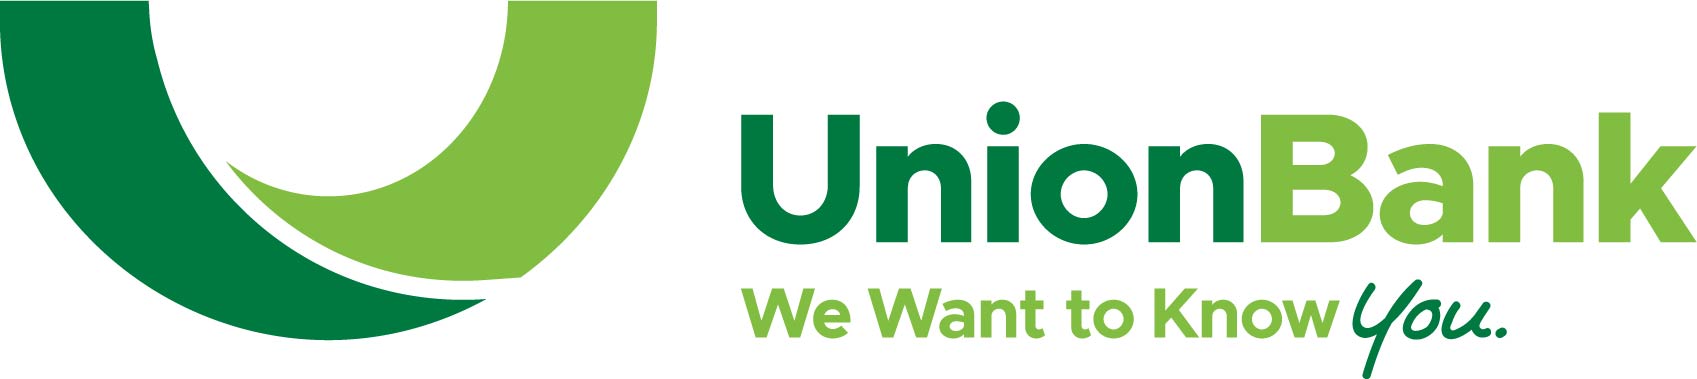 Union Band Logo